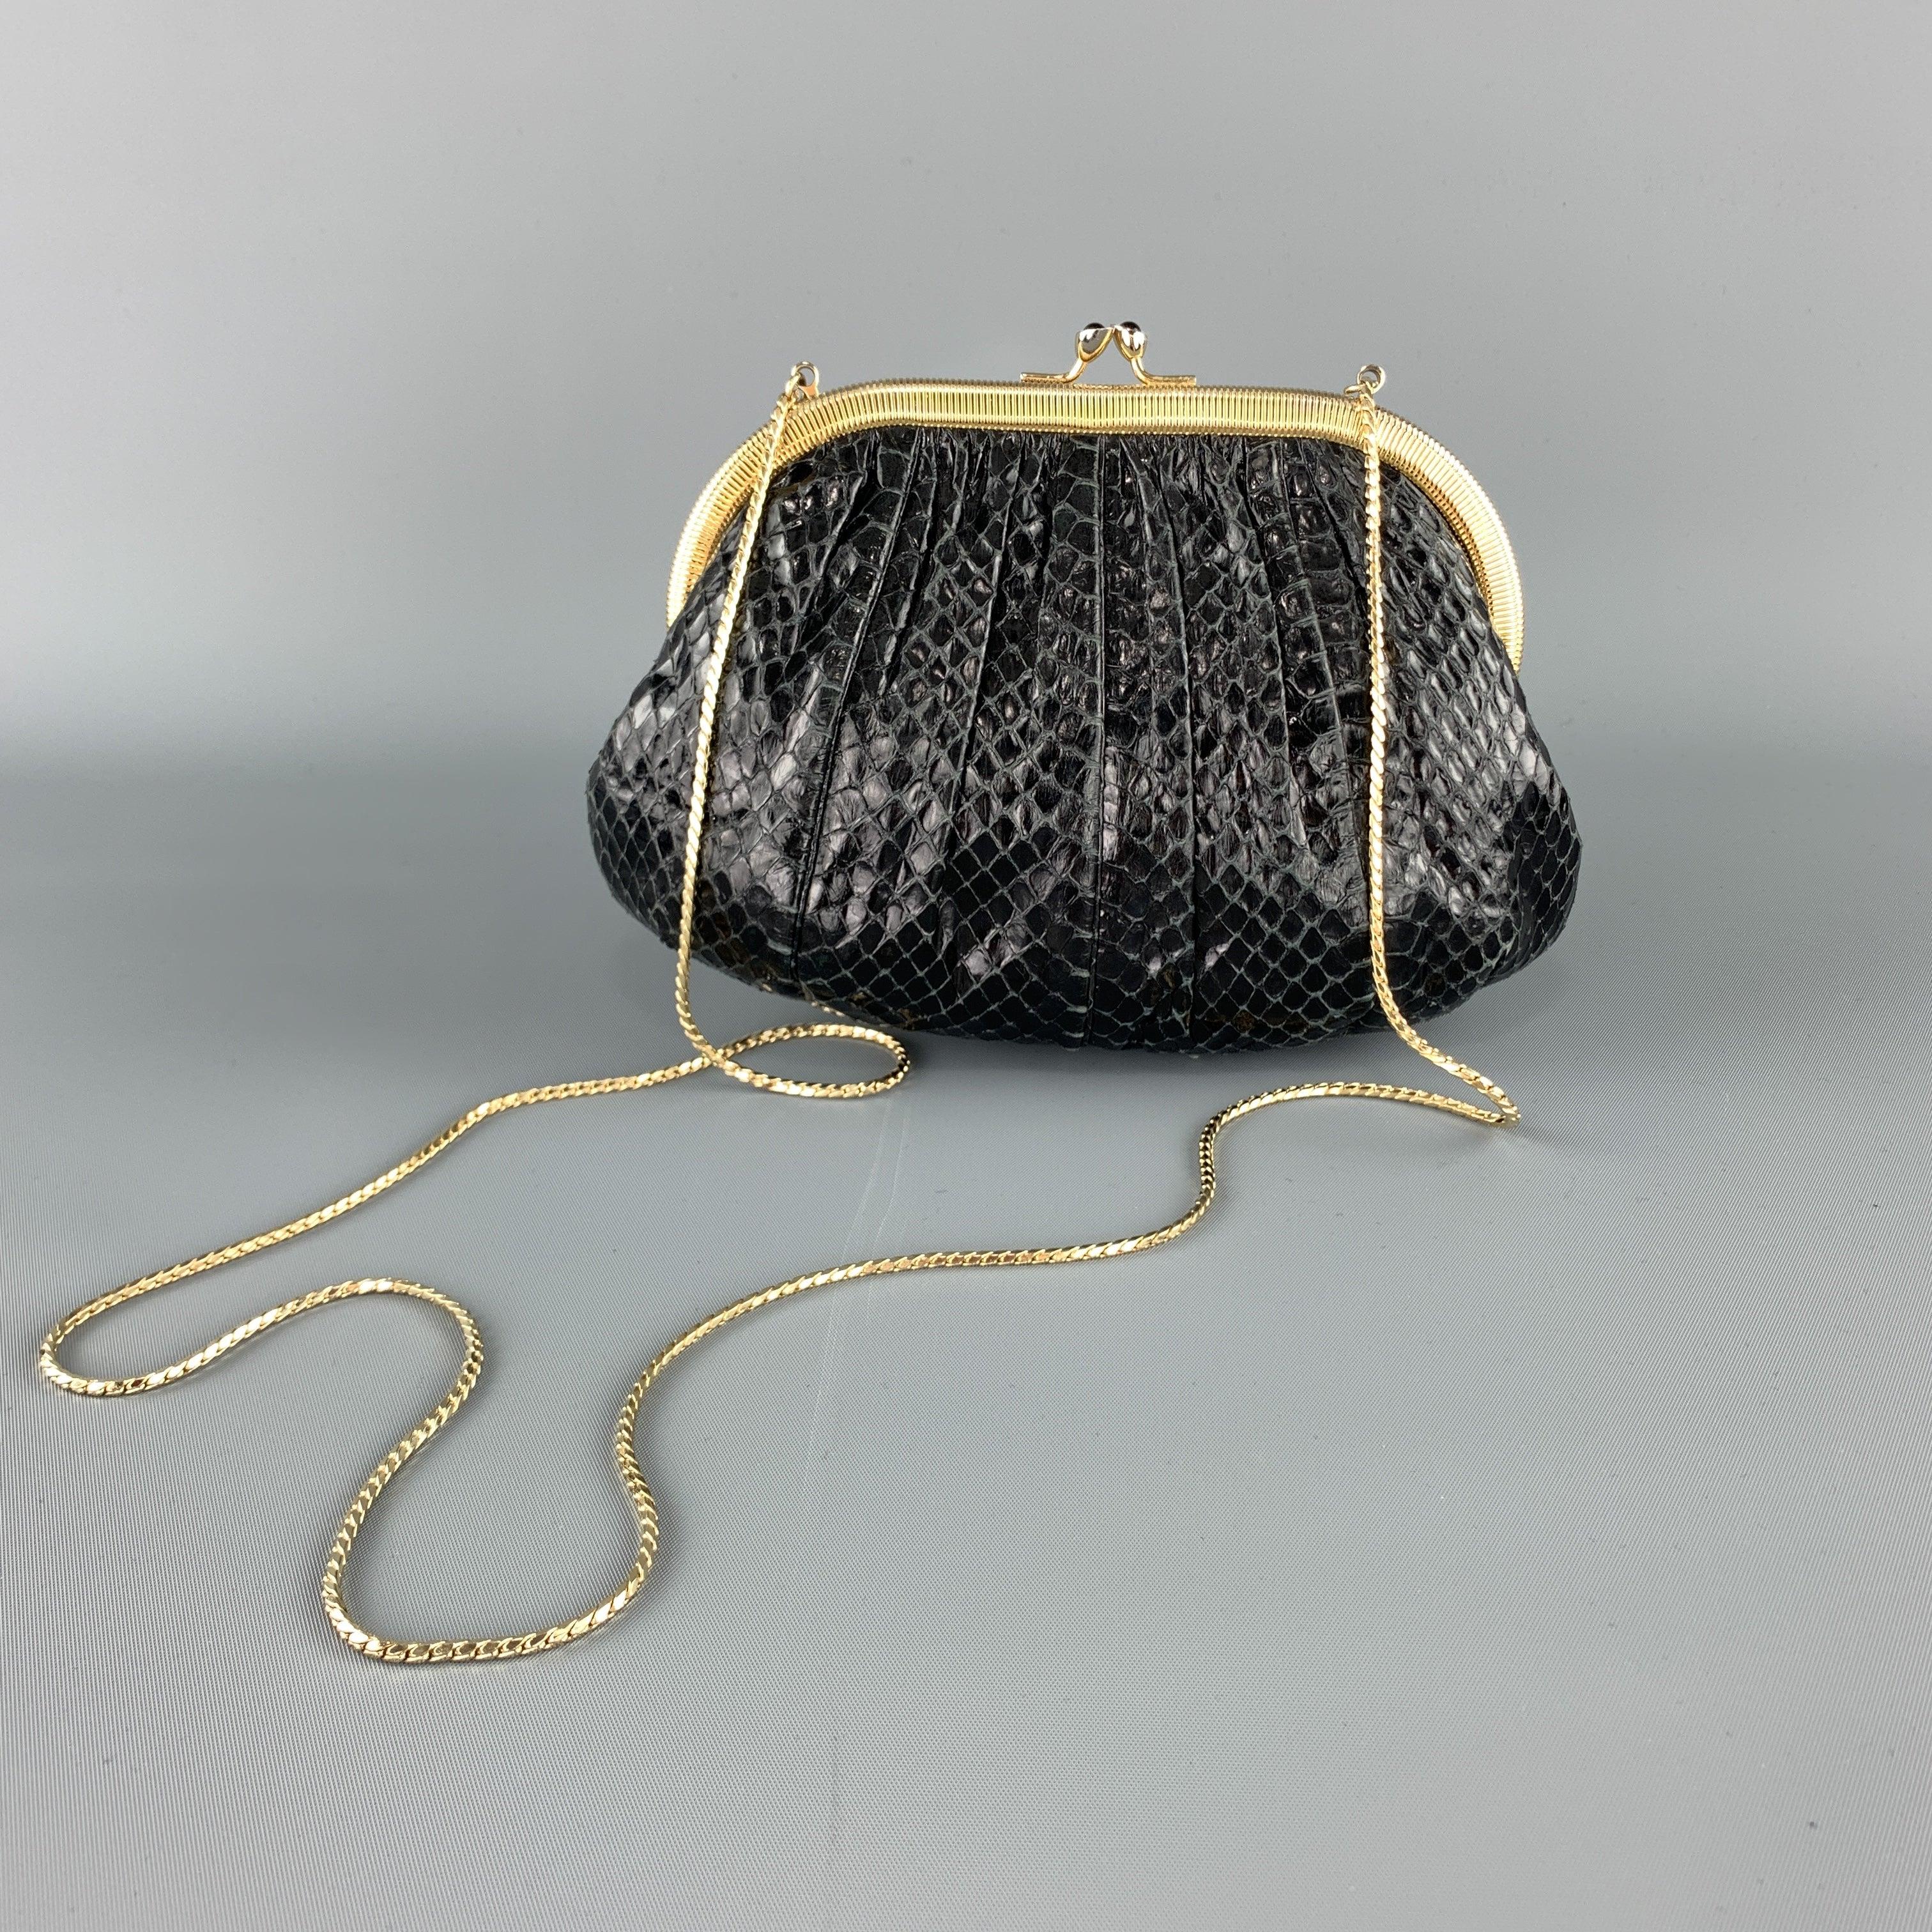 JUDITH LEIBER Ruched Black Snake Skin Evening Clutch Handbag For Sale 1